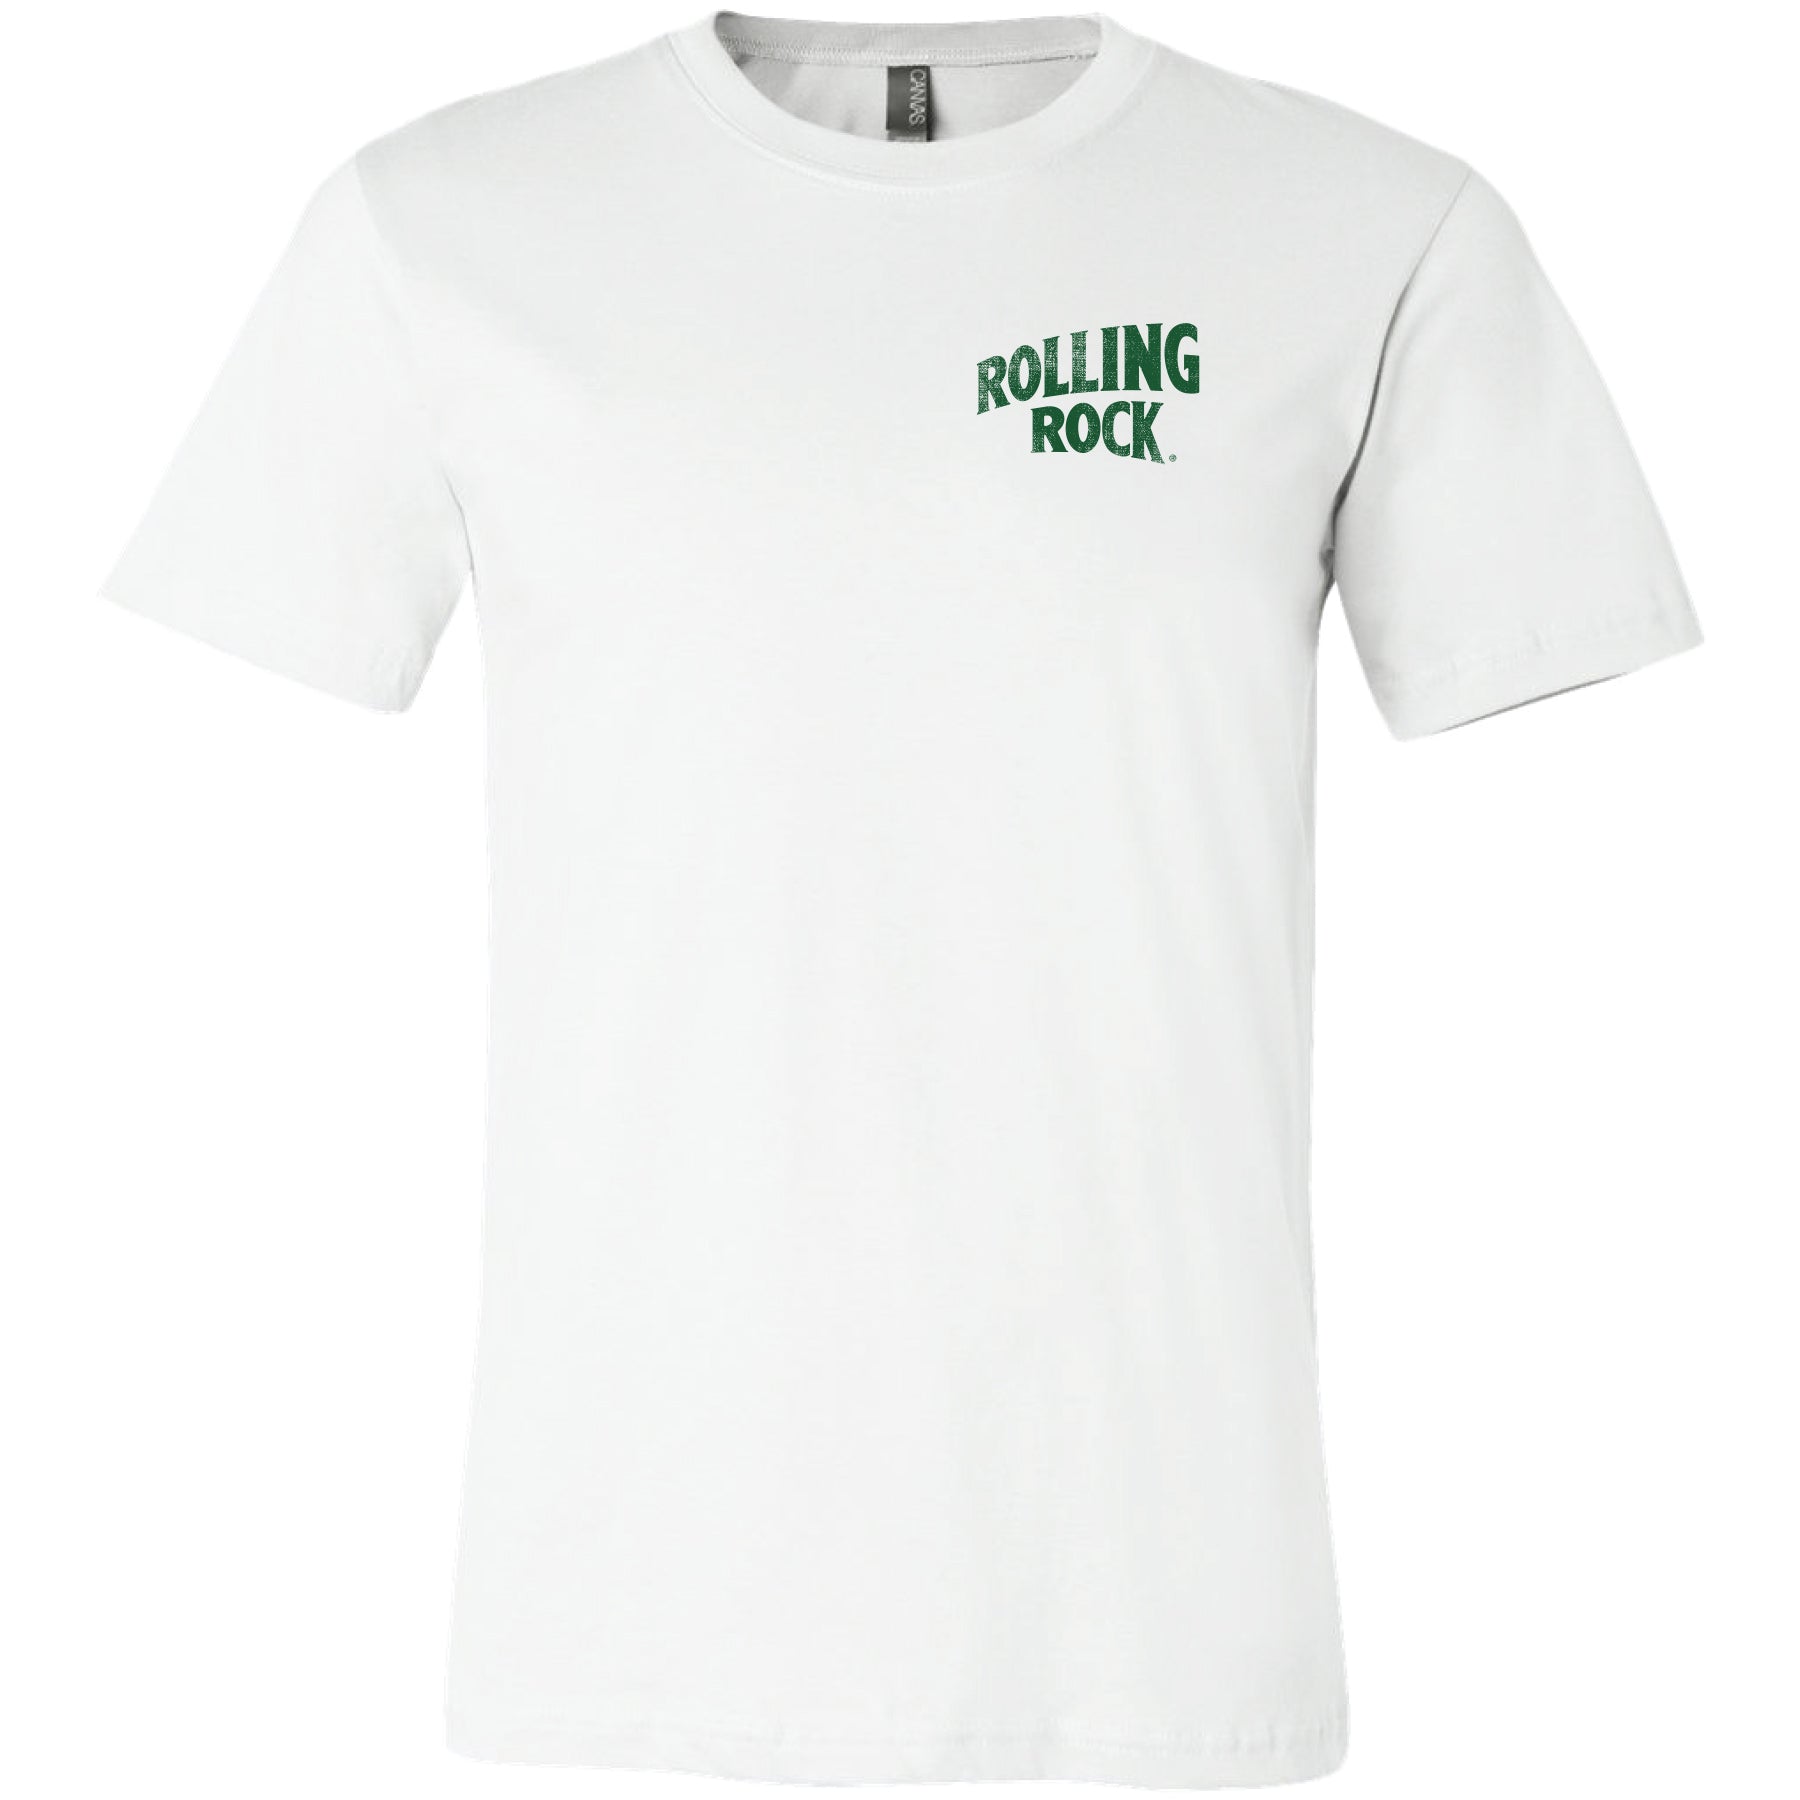 Rolling Rock Label 2-Sided T-Shirt – Brew City Gear